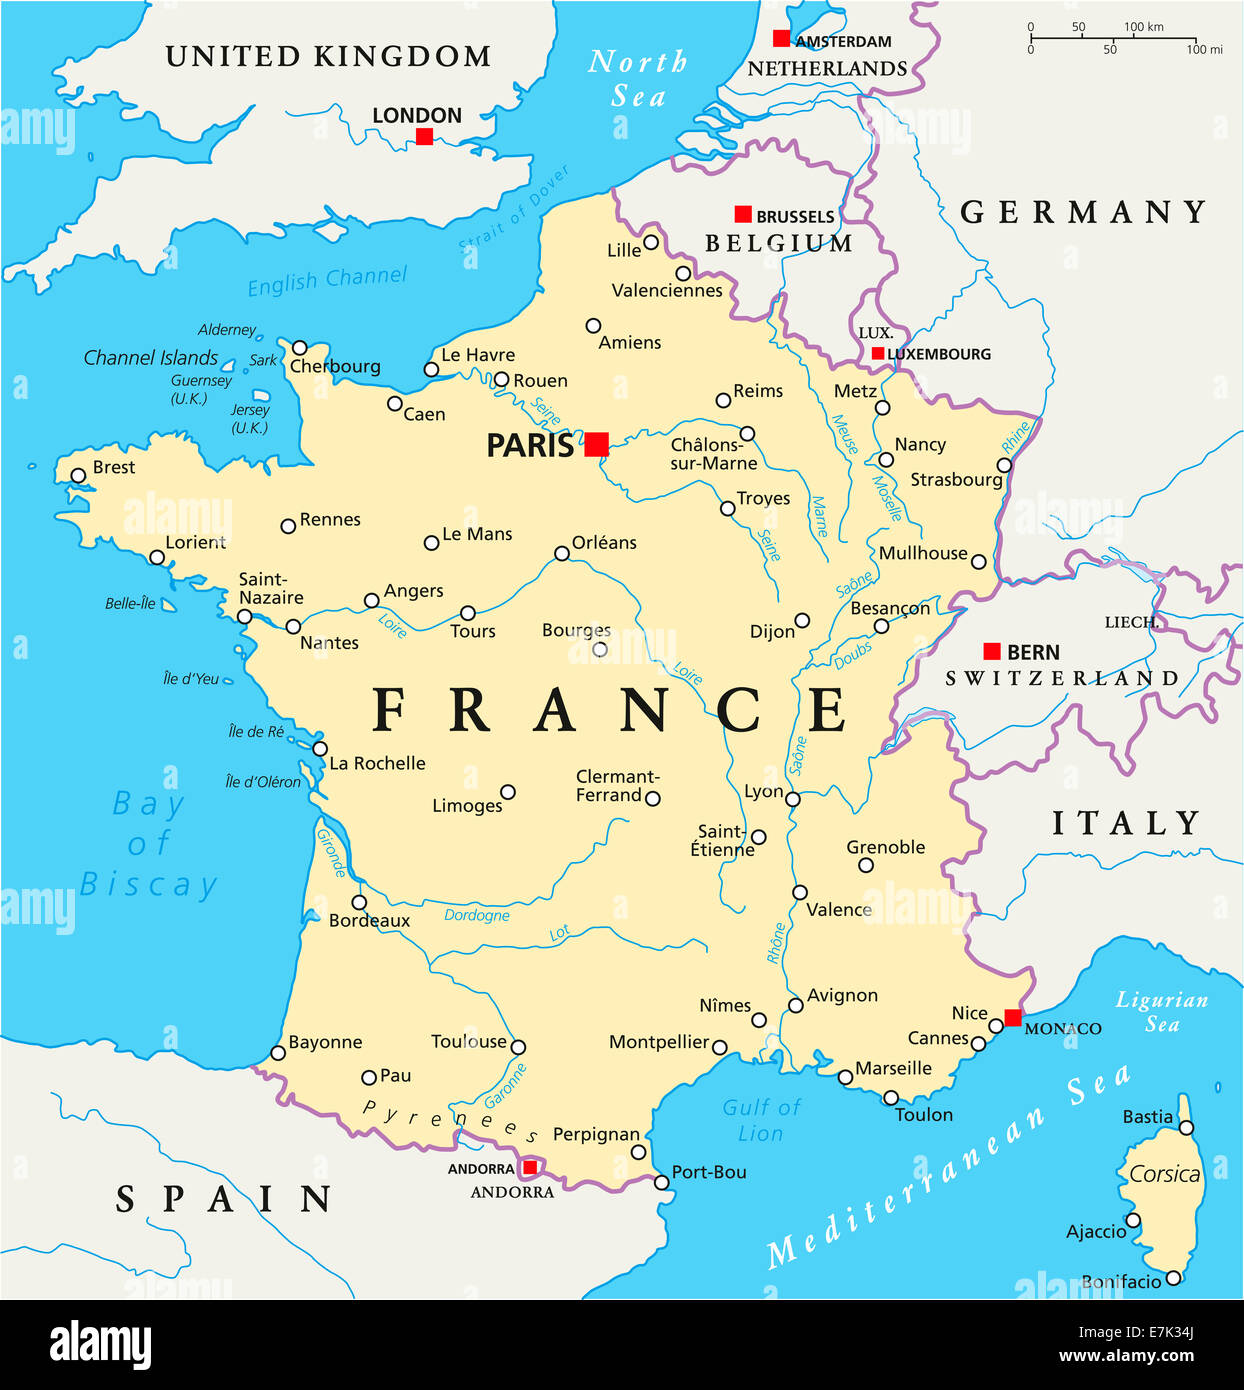 Frankreich politische Karte mit Hauptstadt Paris, Landesgrenzen, die wichtigsten Städte und Flüsse. Englische Beschriftung und Skalierung. Stockfoto